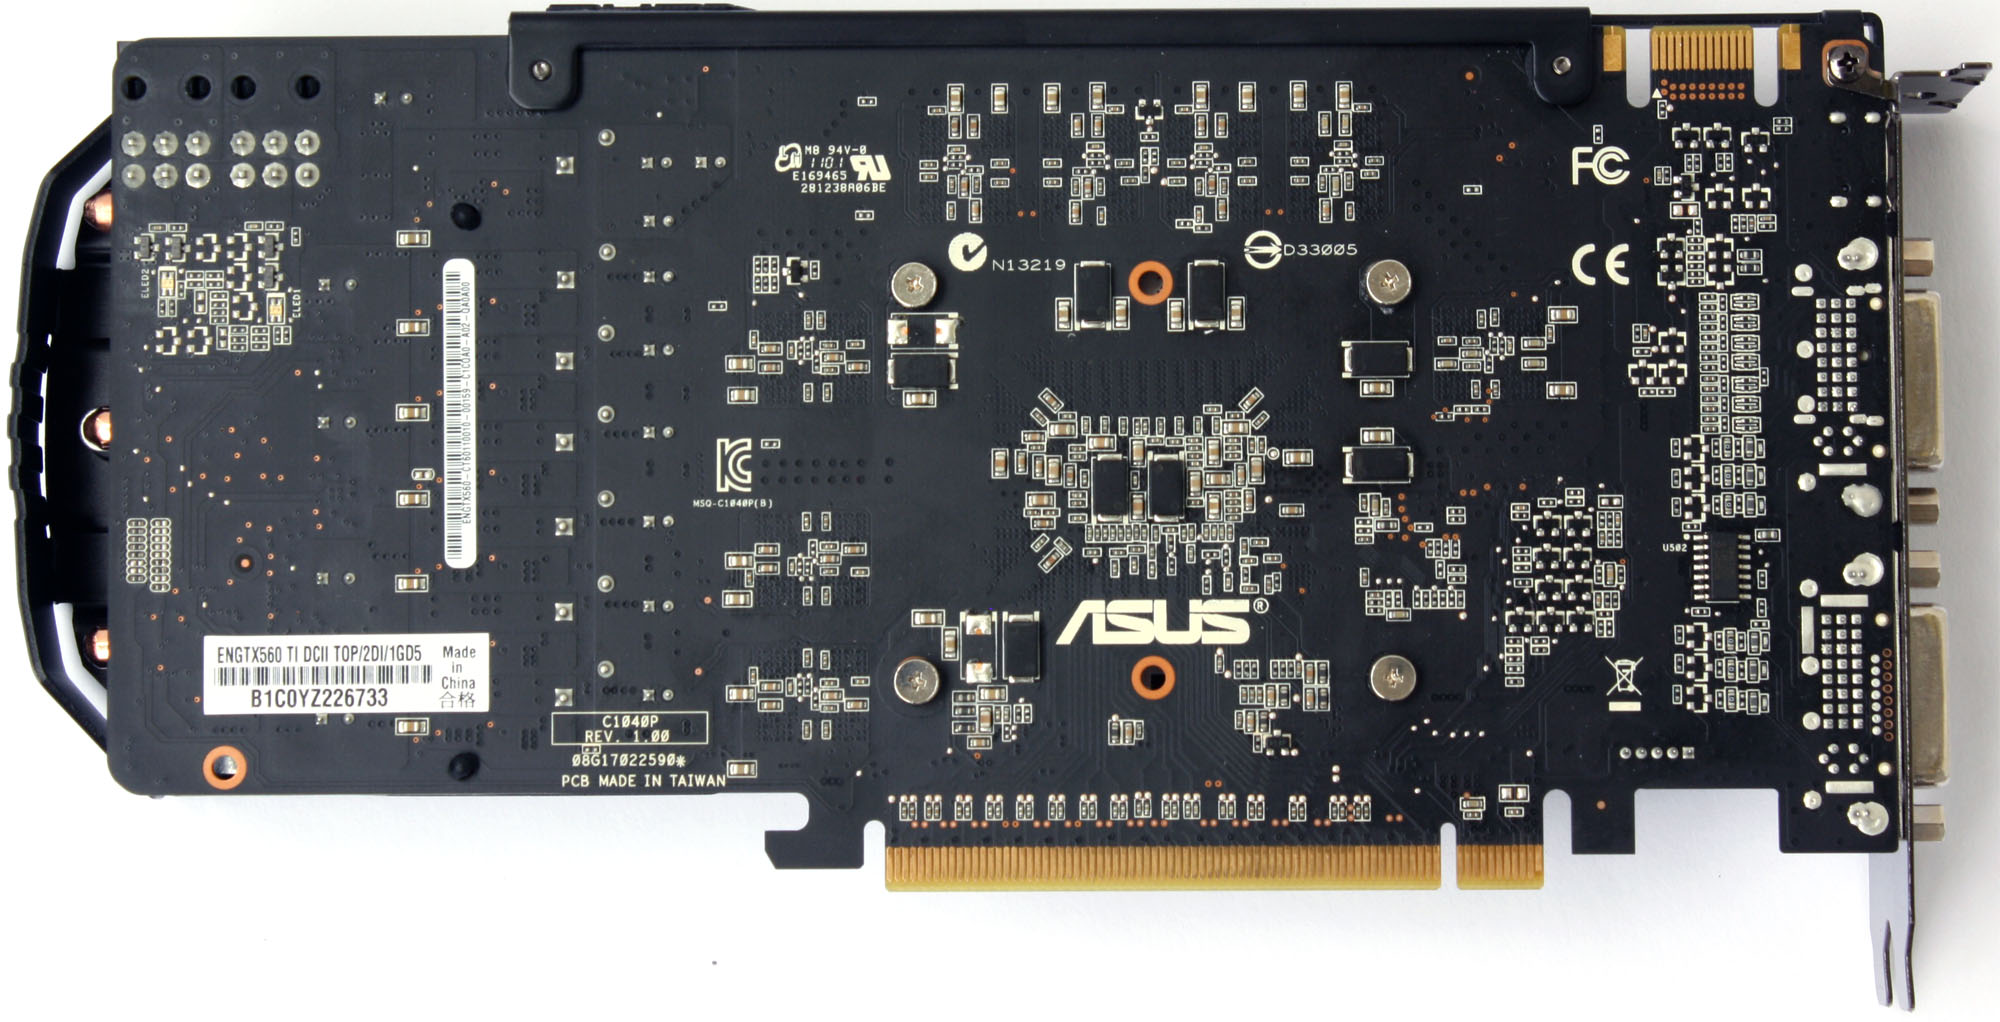 Test tří upravených GeForce GTX 560: Kterou vybrat?